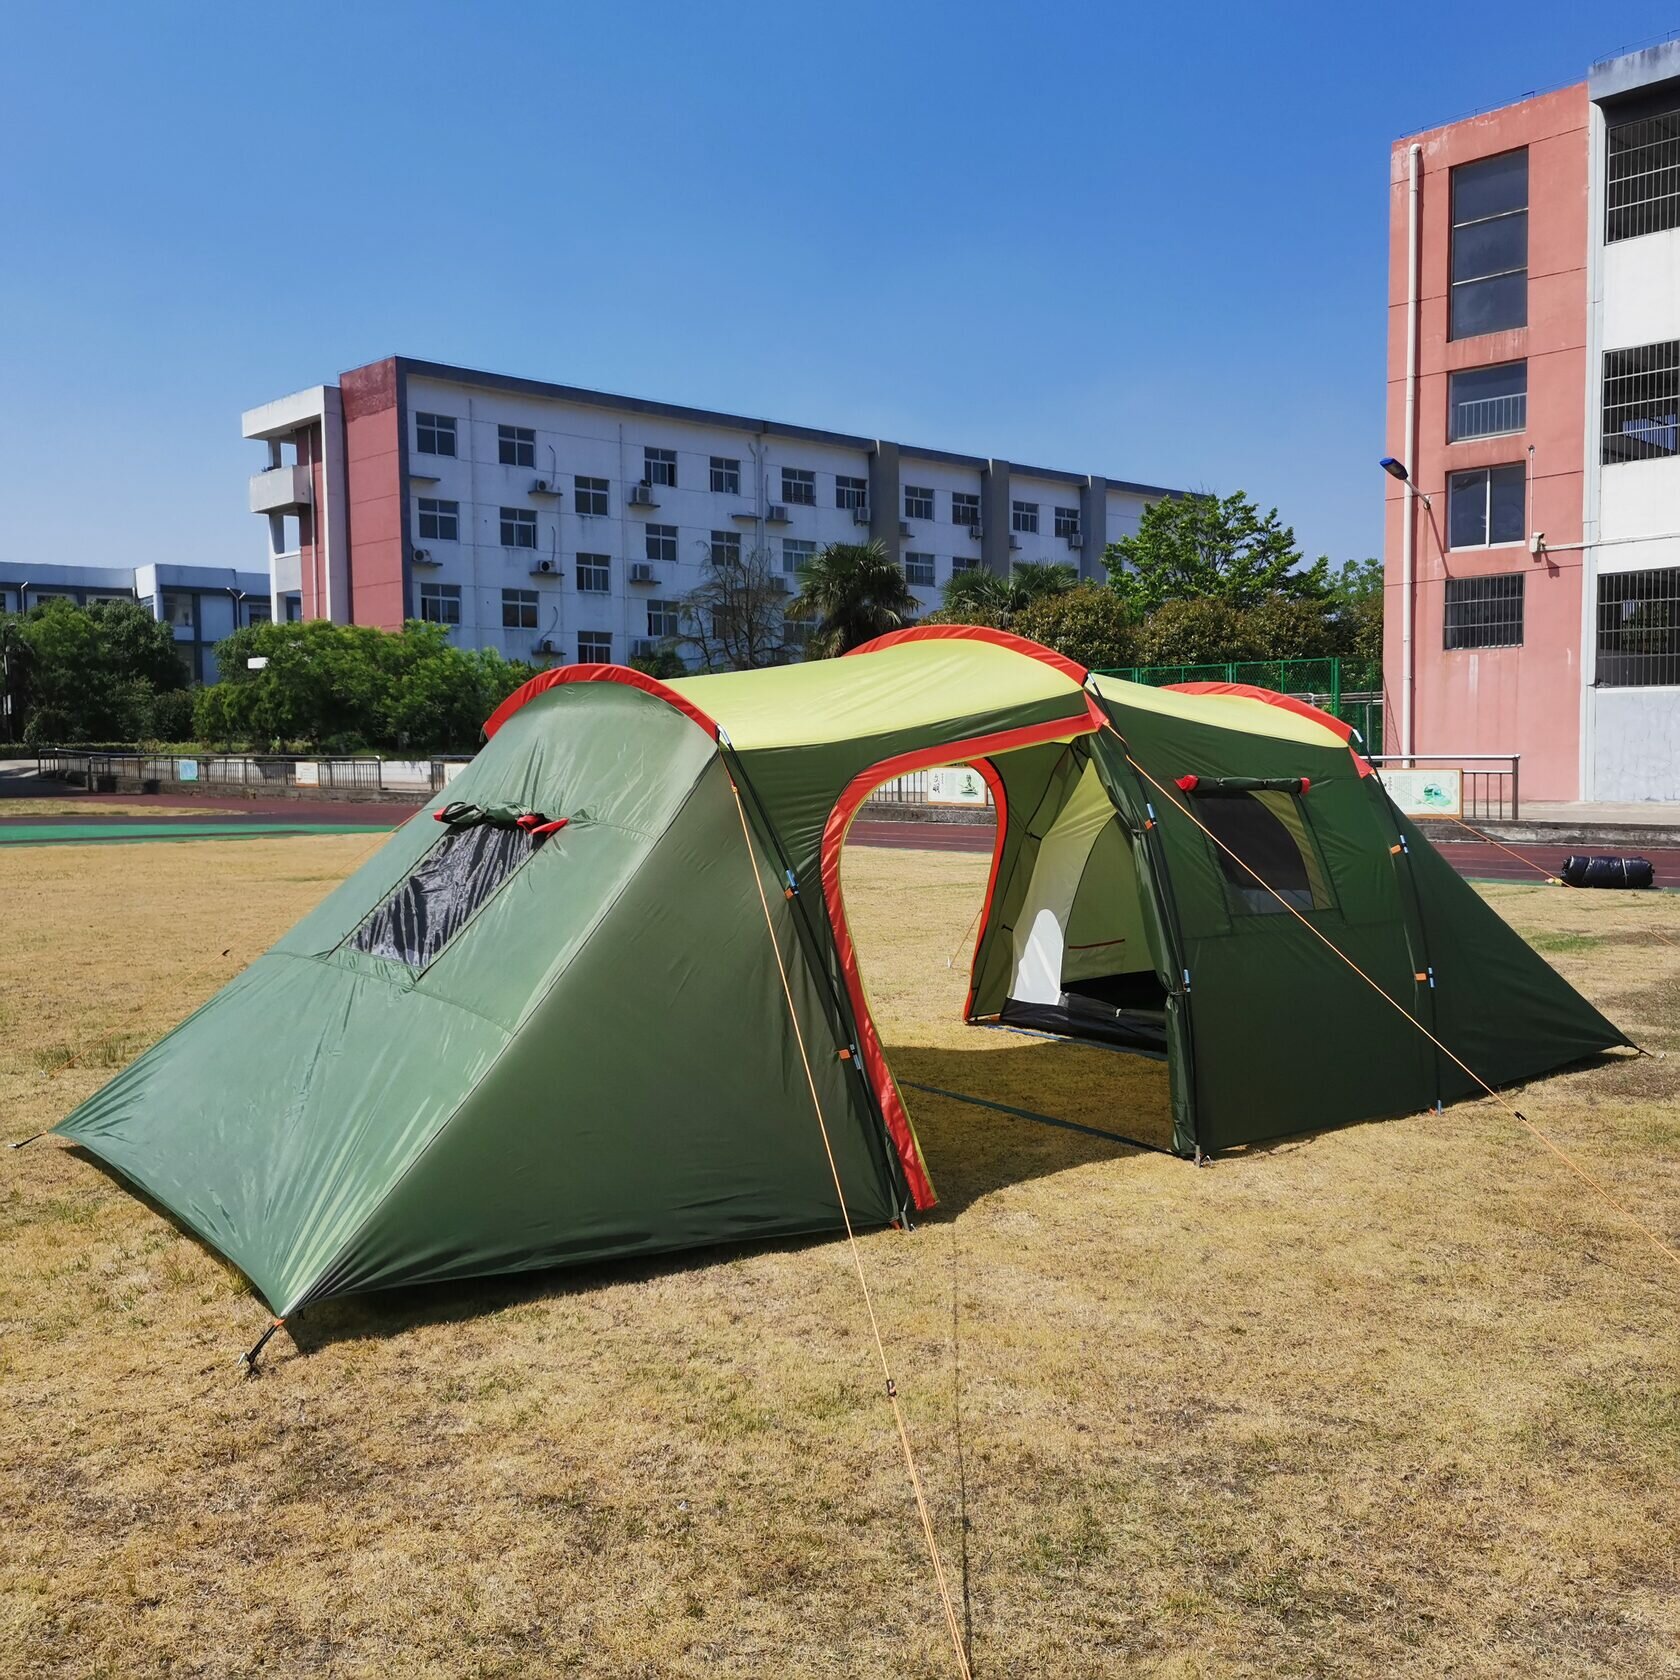 Туристическая 4х местная палатка для кемпинга Terbo Mir 1-007, двухслойная, 2 комнаты с большим тамбуром, цвет зеленый